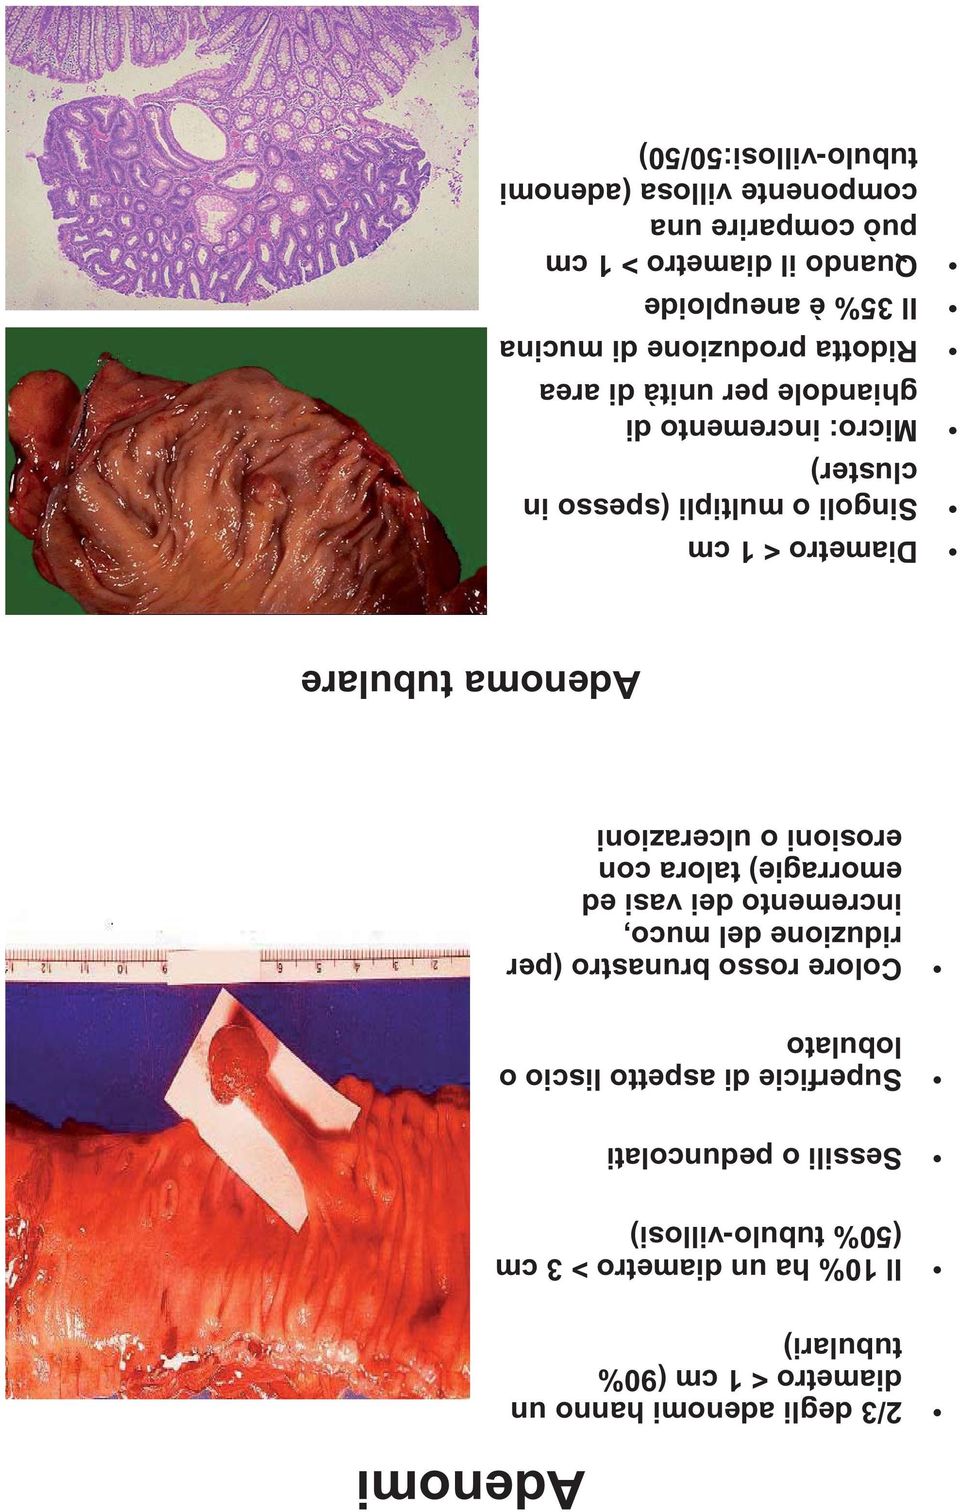 erosioni o ulcerazioni Adenomi Adenoma tubulare Diametro < 1 cm Singoli o multipli (spesso in cluster) Micro: incremento di ghiandole per